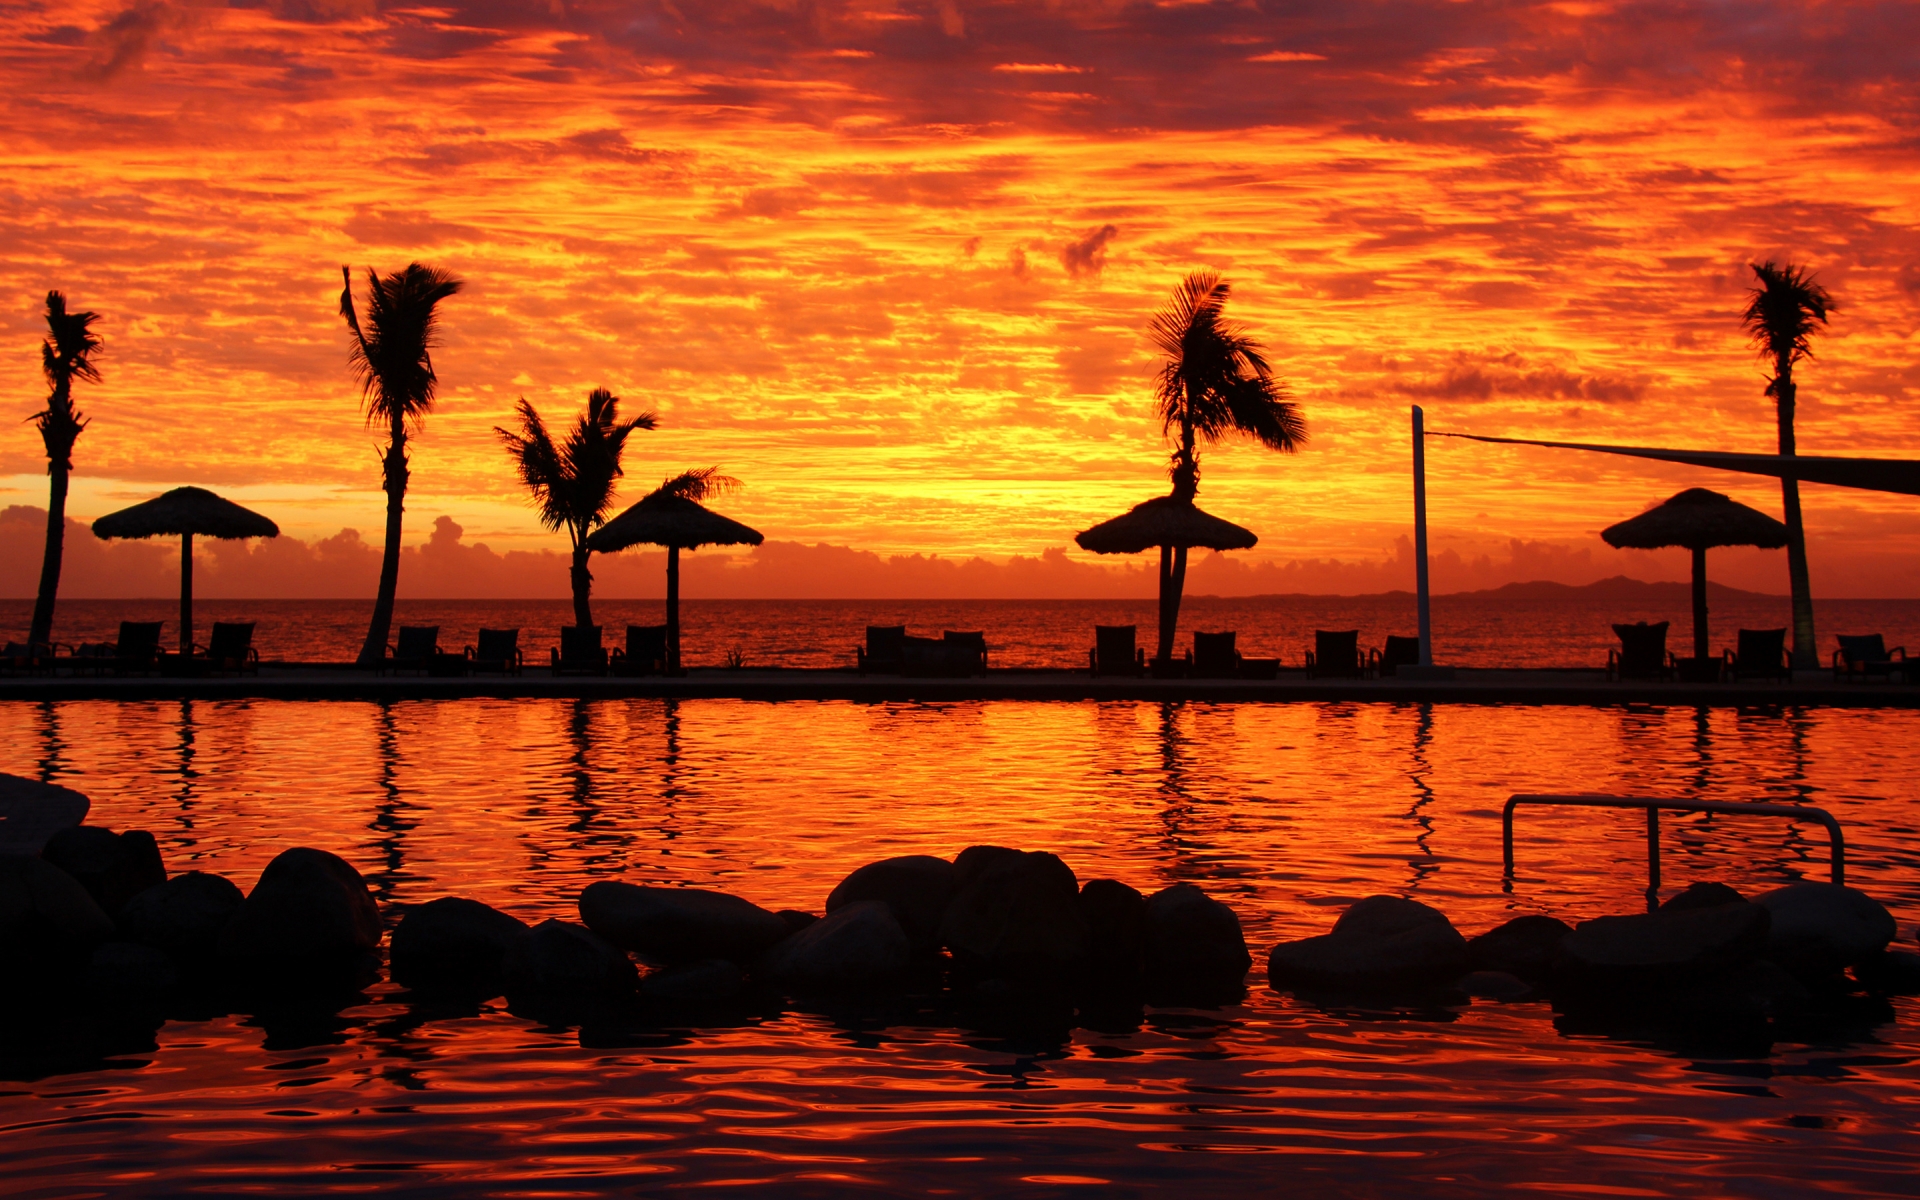 Fijian Sunset for 1920 x 1200 widescreen resolution